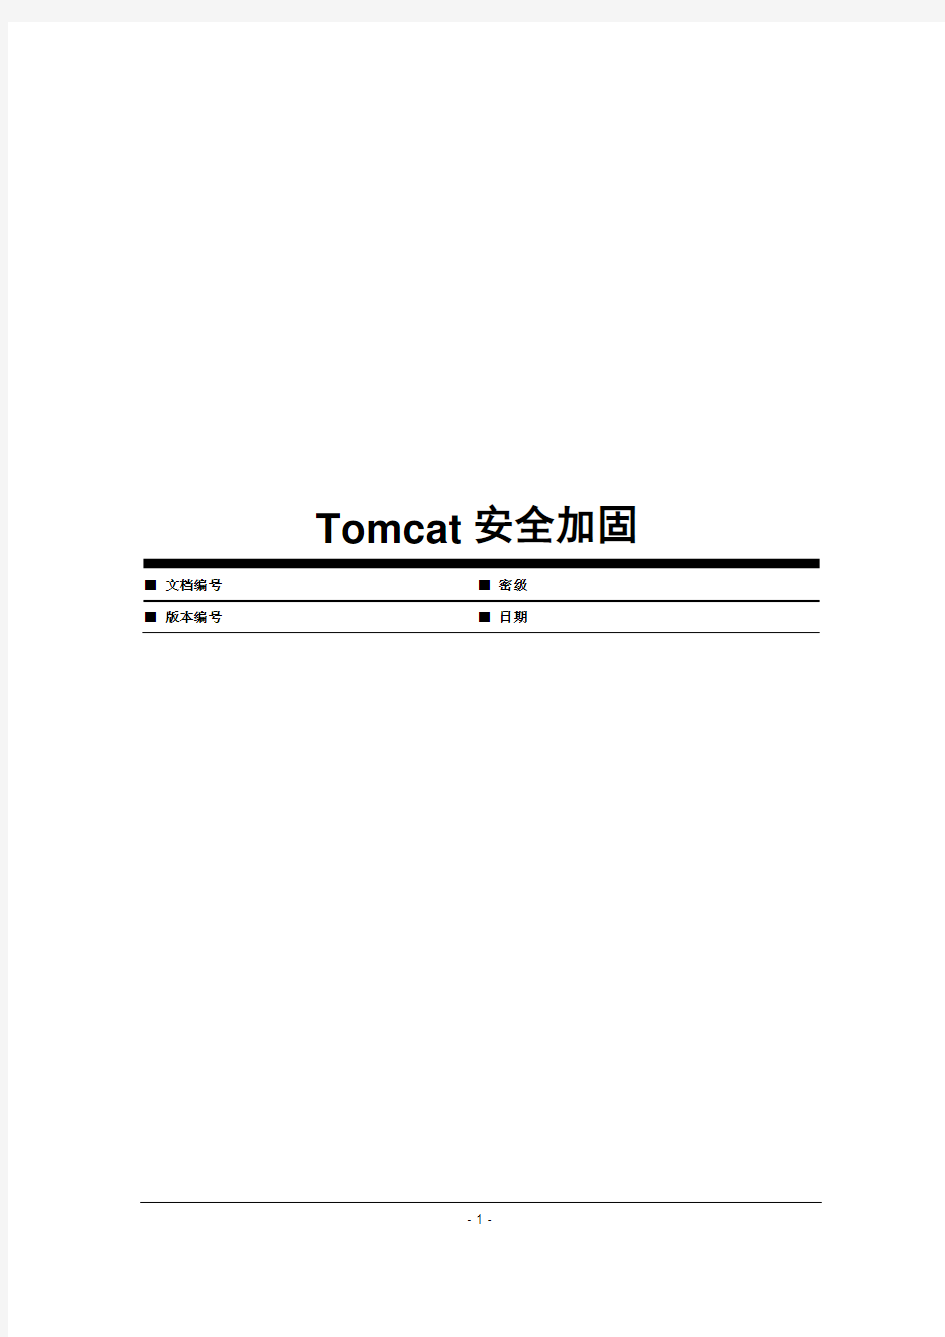 Tomcat安全加固